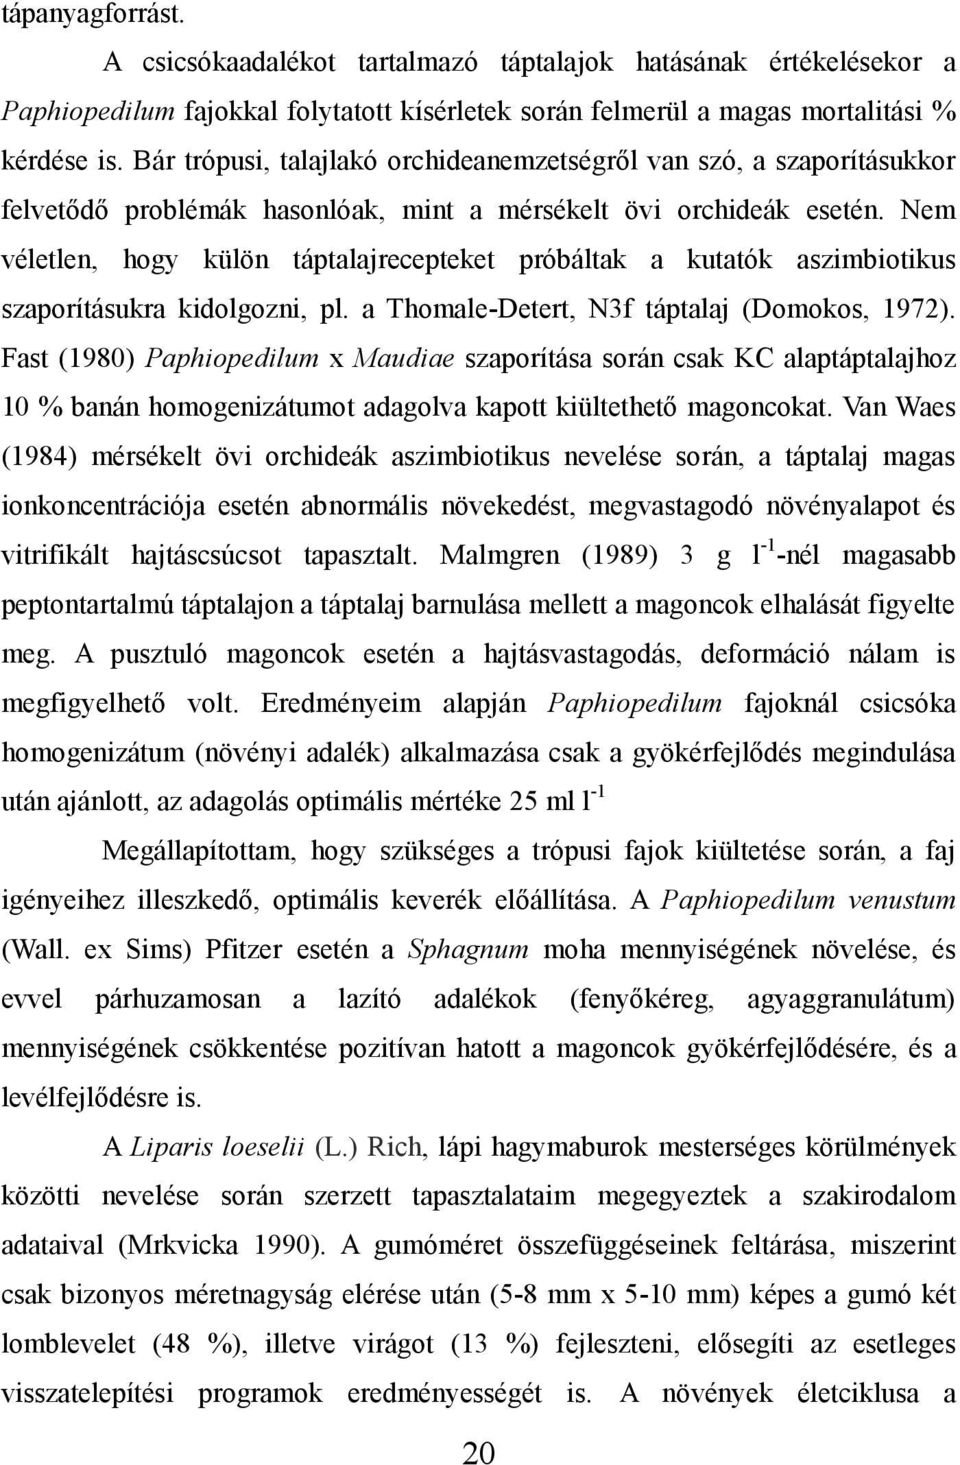 Nem véletlen, hogy külön táptalajrecepteket próbáltak a kutatók aszimbiotikus szaporításukra kidolgozni, pl. a Thomale-Detert, N3f táptalaj (Domokos, 1972).